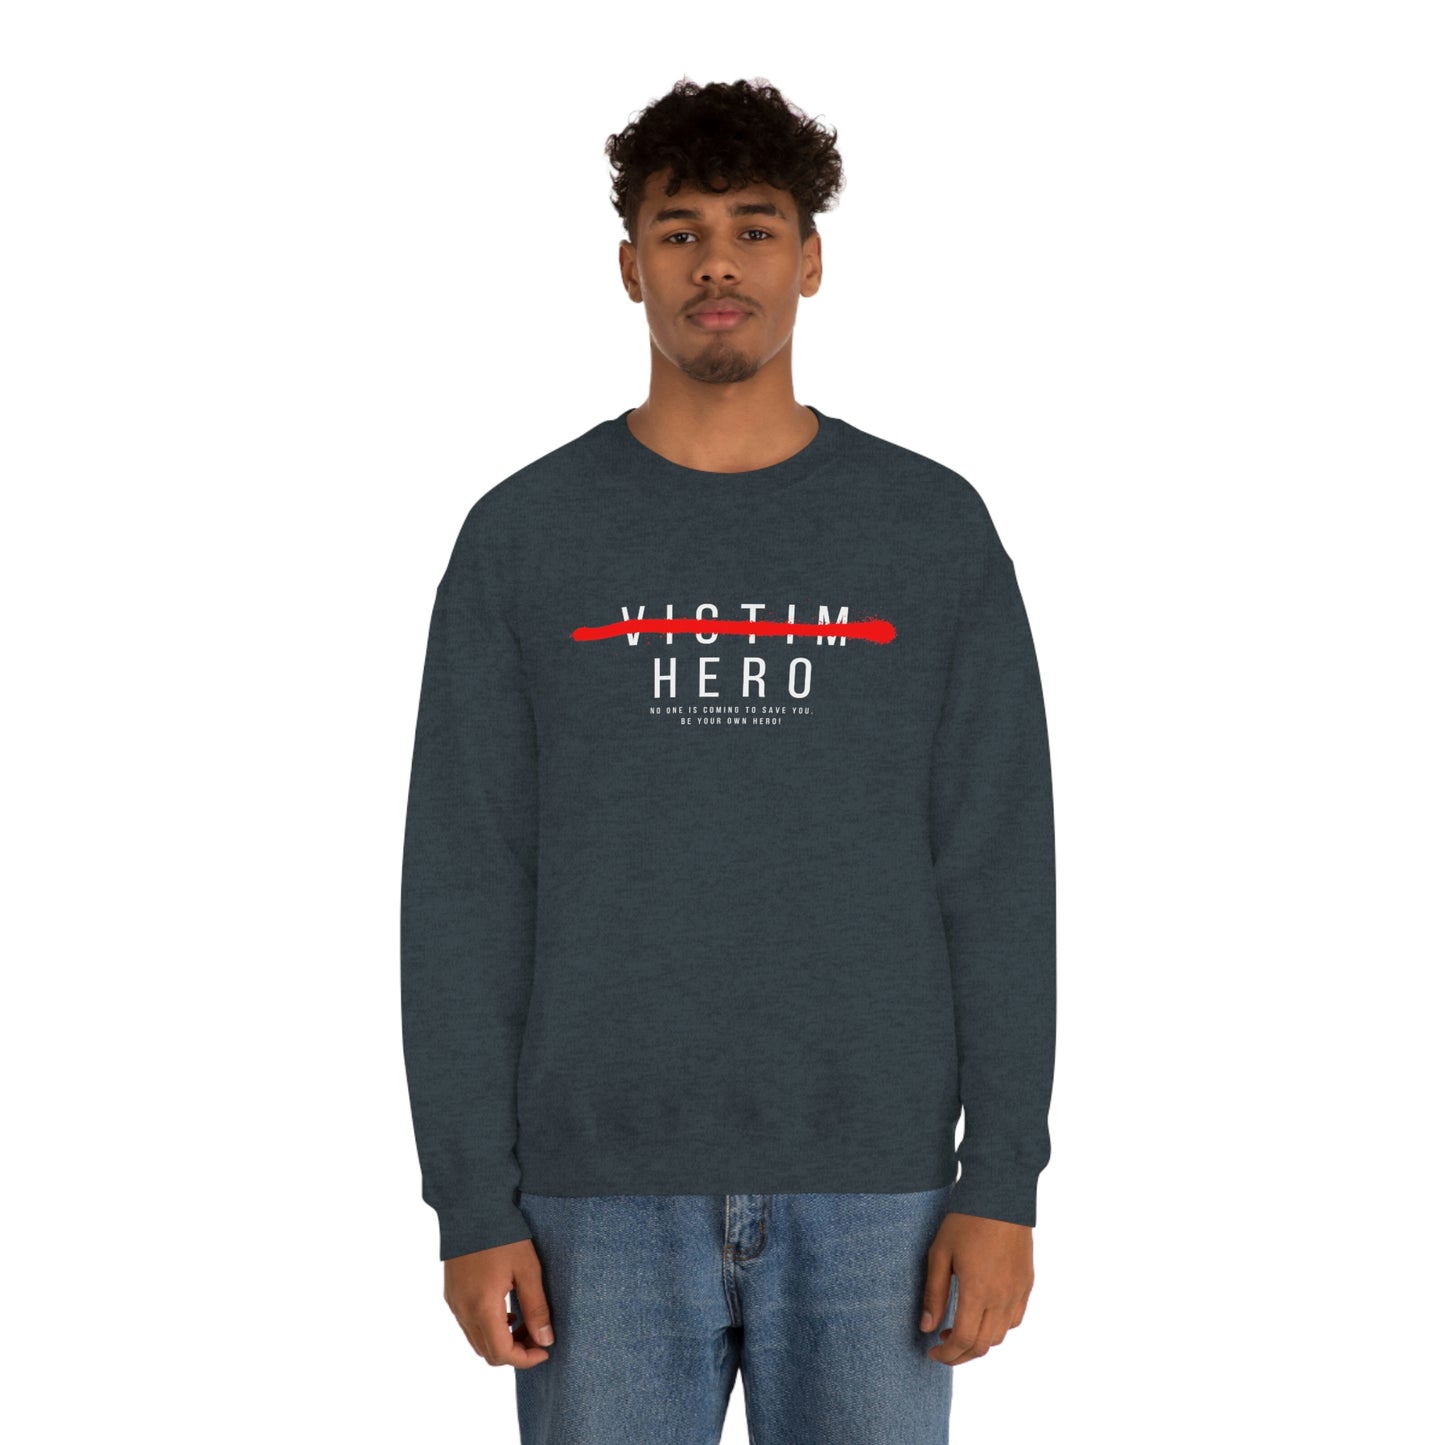 HERO Crewneck Sweatshirt